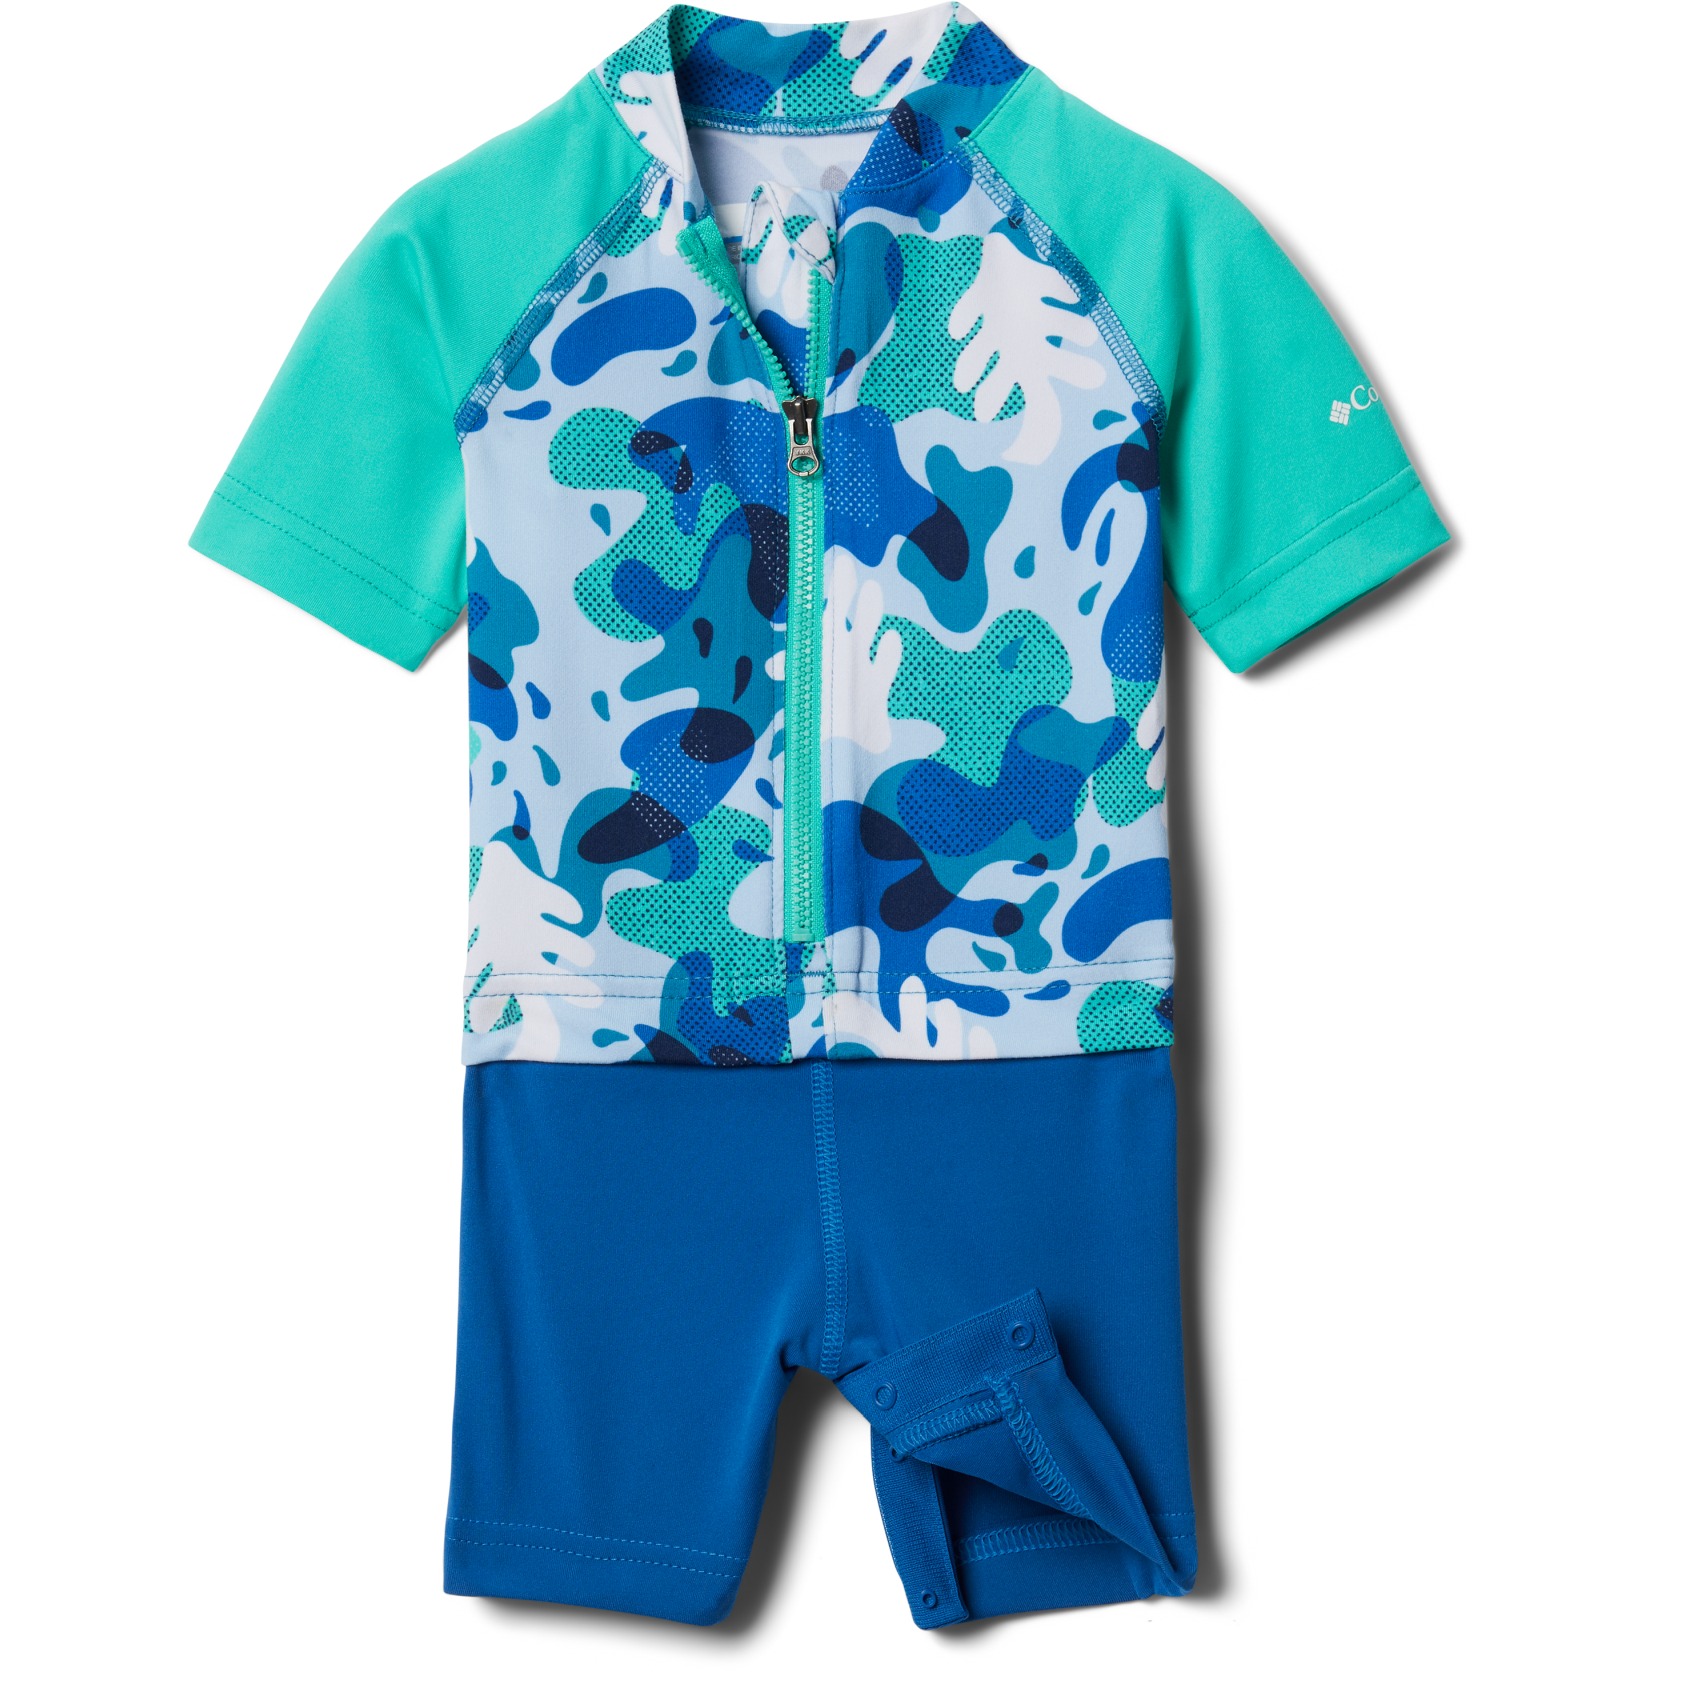 Produktbild von Columbia Sandy Shores Sonnenschutzanzug Kinder - Deep Marine Splash Camo, Electric Turquoise